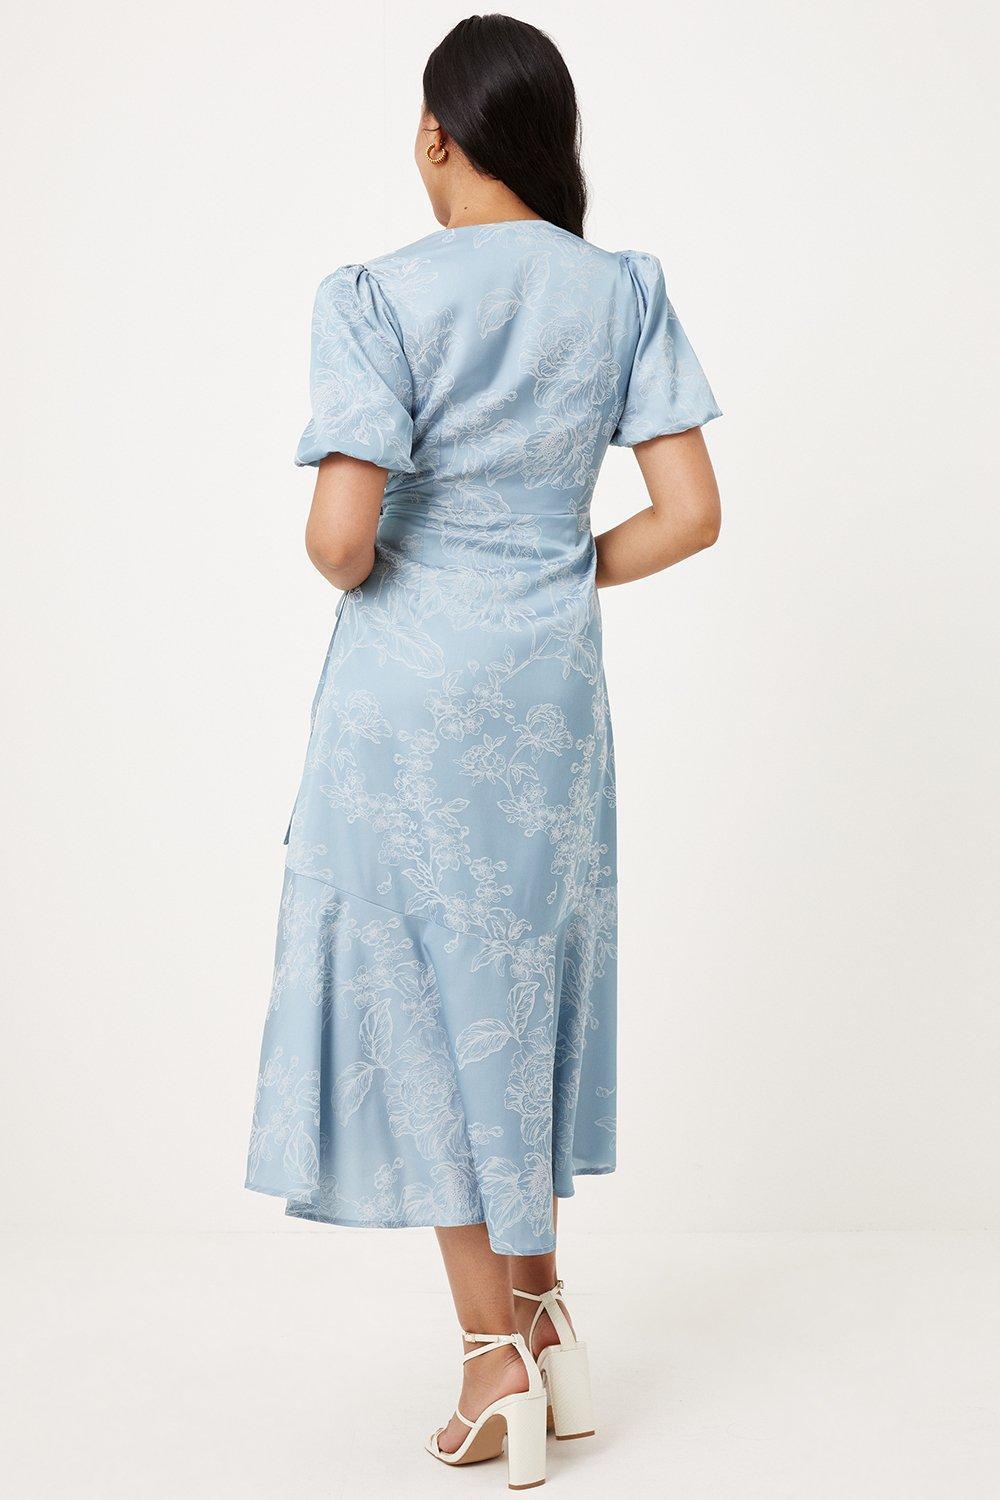 satynowa niebieska sukienka falbana bufki wzór kwiaty